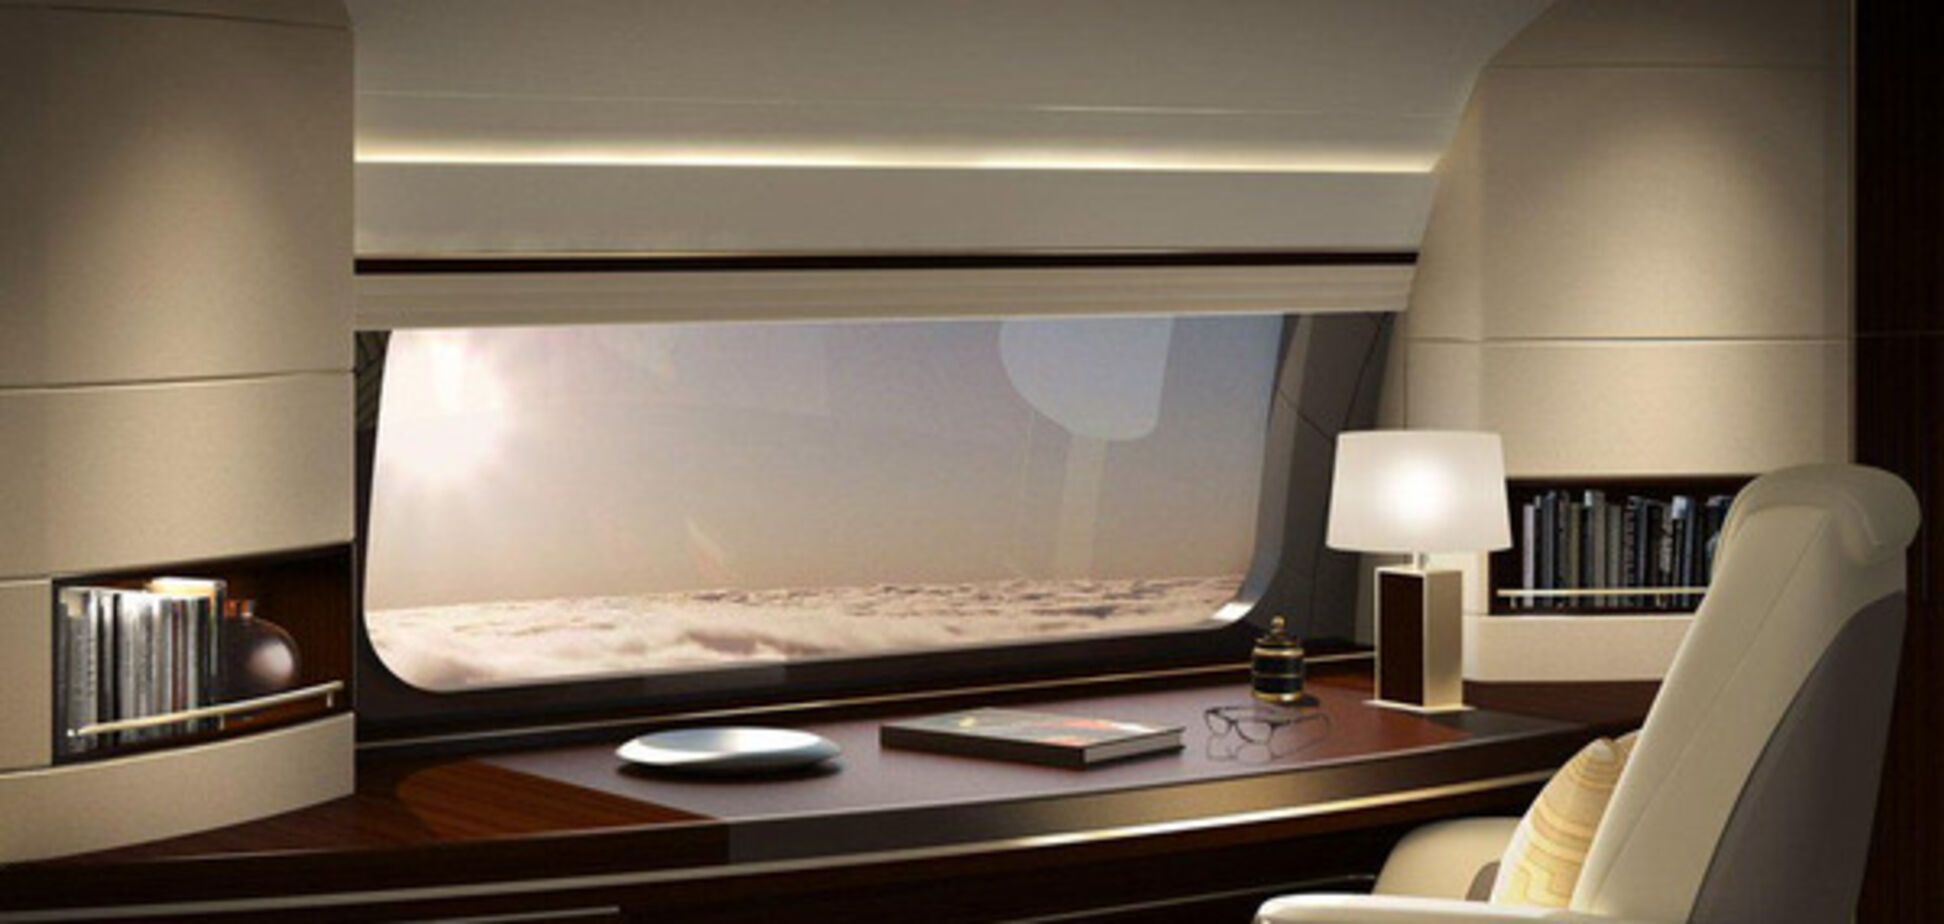 панорамное окно в самолете